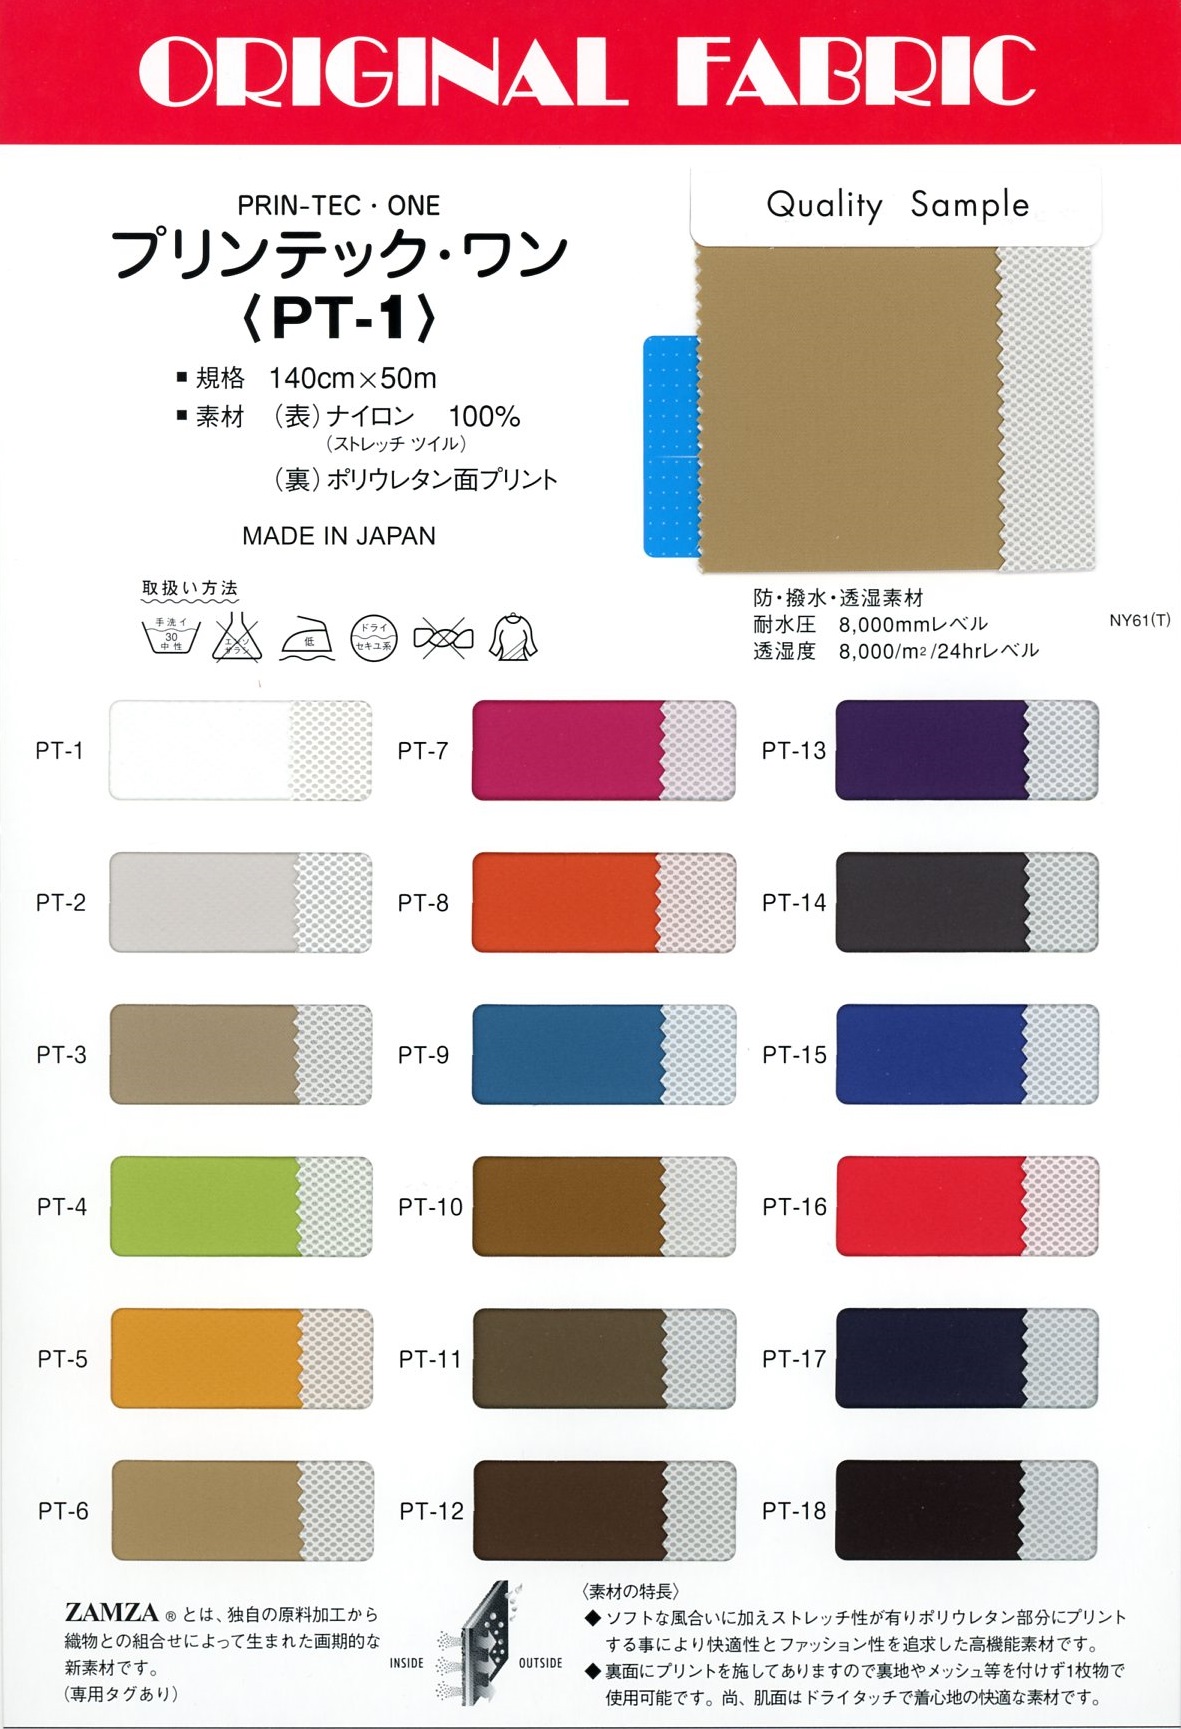 PT1 Printec One[Fabrica Textil] Masuda